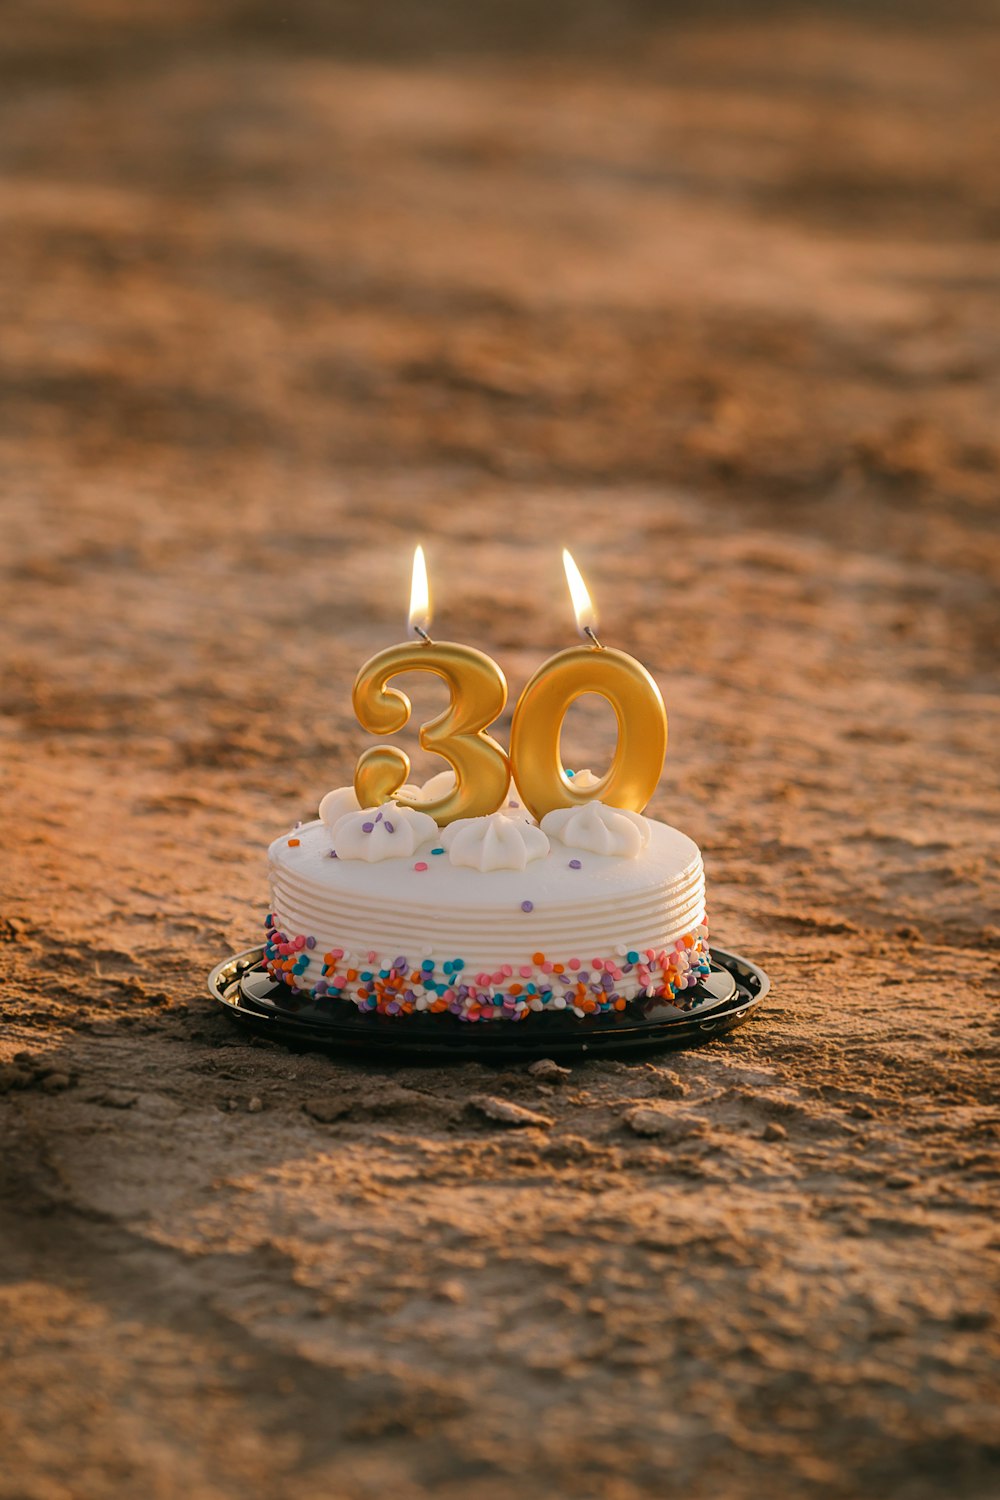 450+ Fotos de 30 cumpleaños  Descargar imágenes gratis en Unsplash